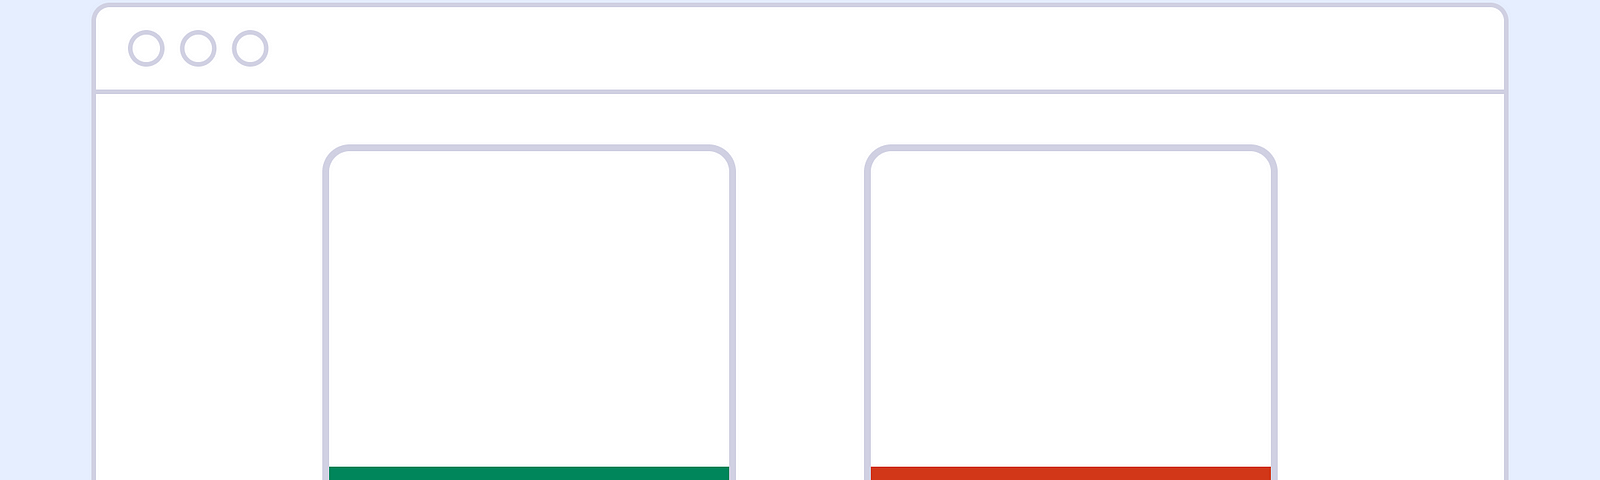 Ilustração de uma página web com duas figuras no centro, representando regras do que fazer, em verde, e o que não fazer, em vermelho.